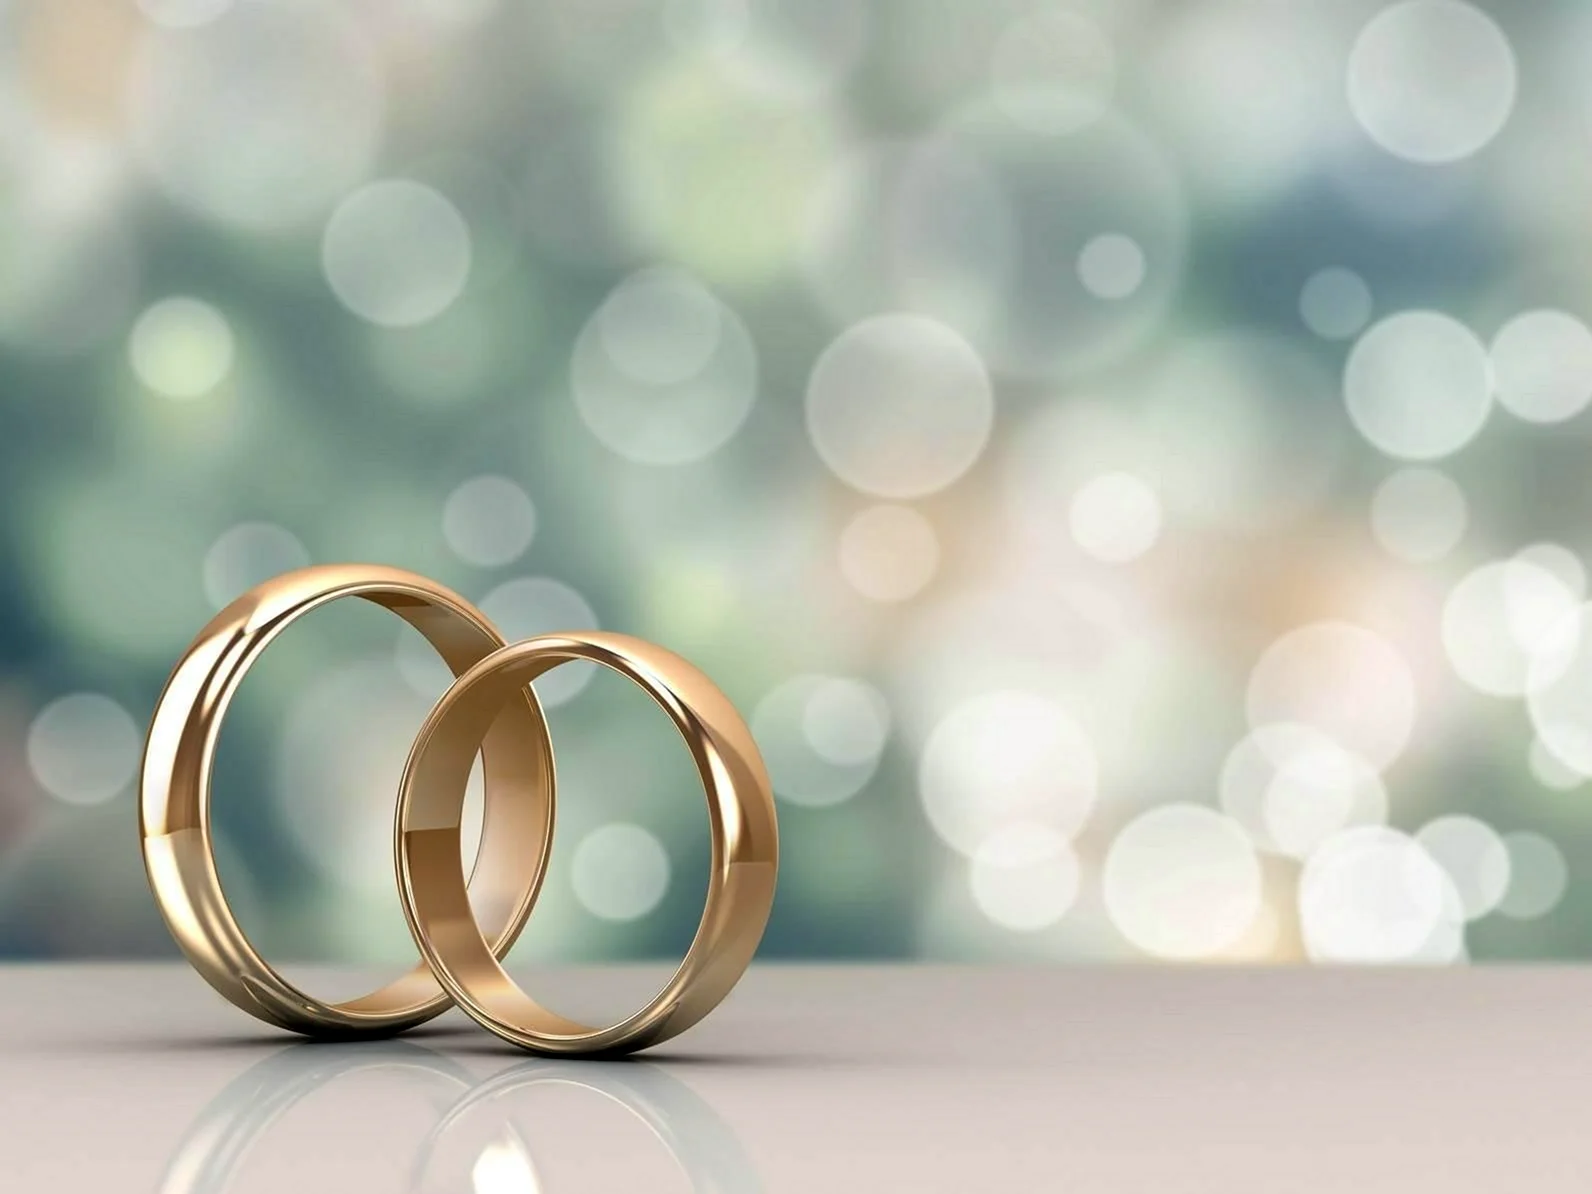 Свадебные кольца Изображения – скачать бесплатно на Freepik